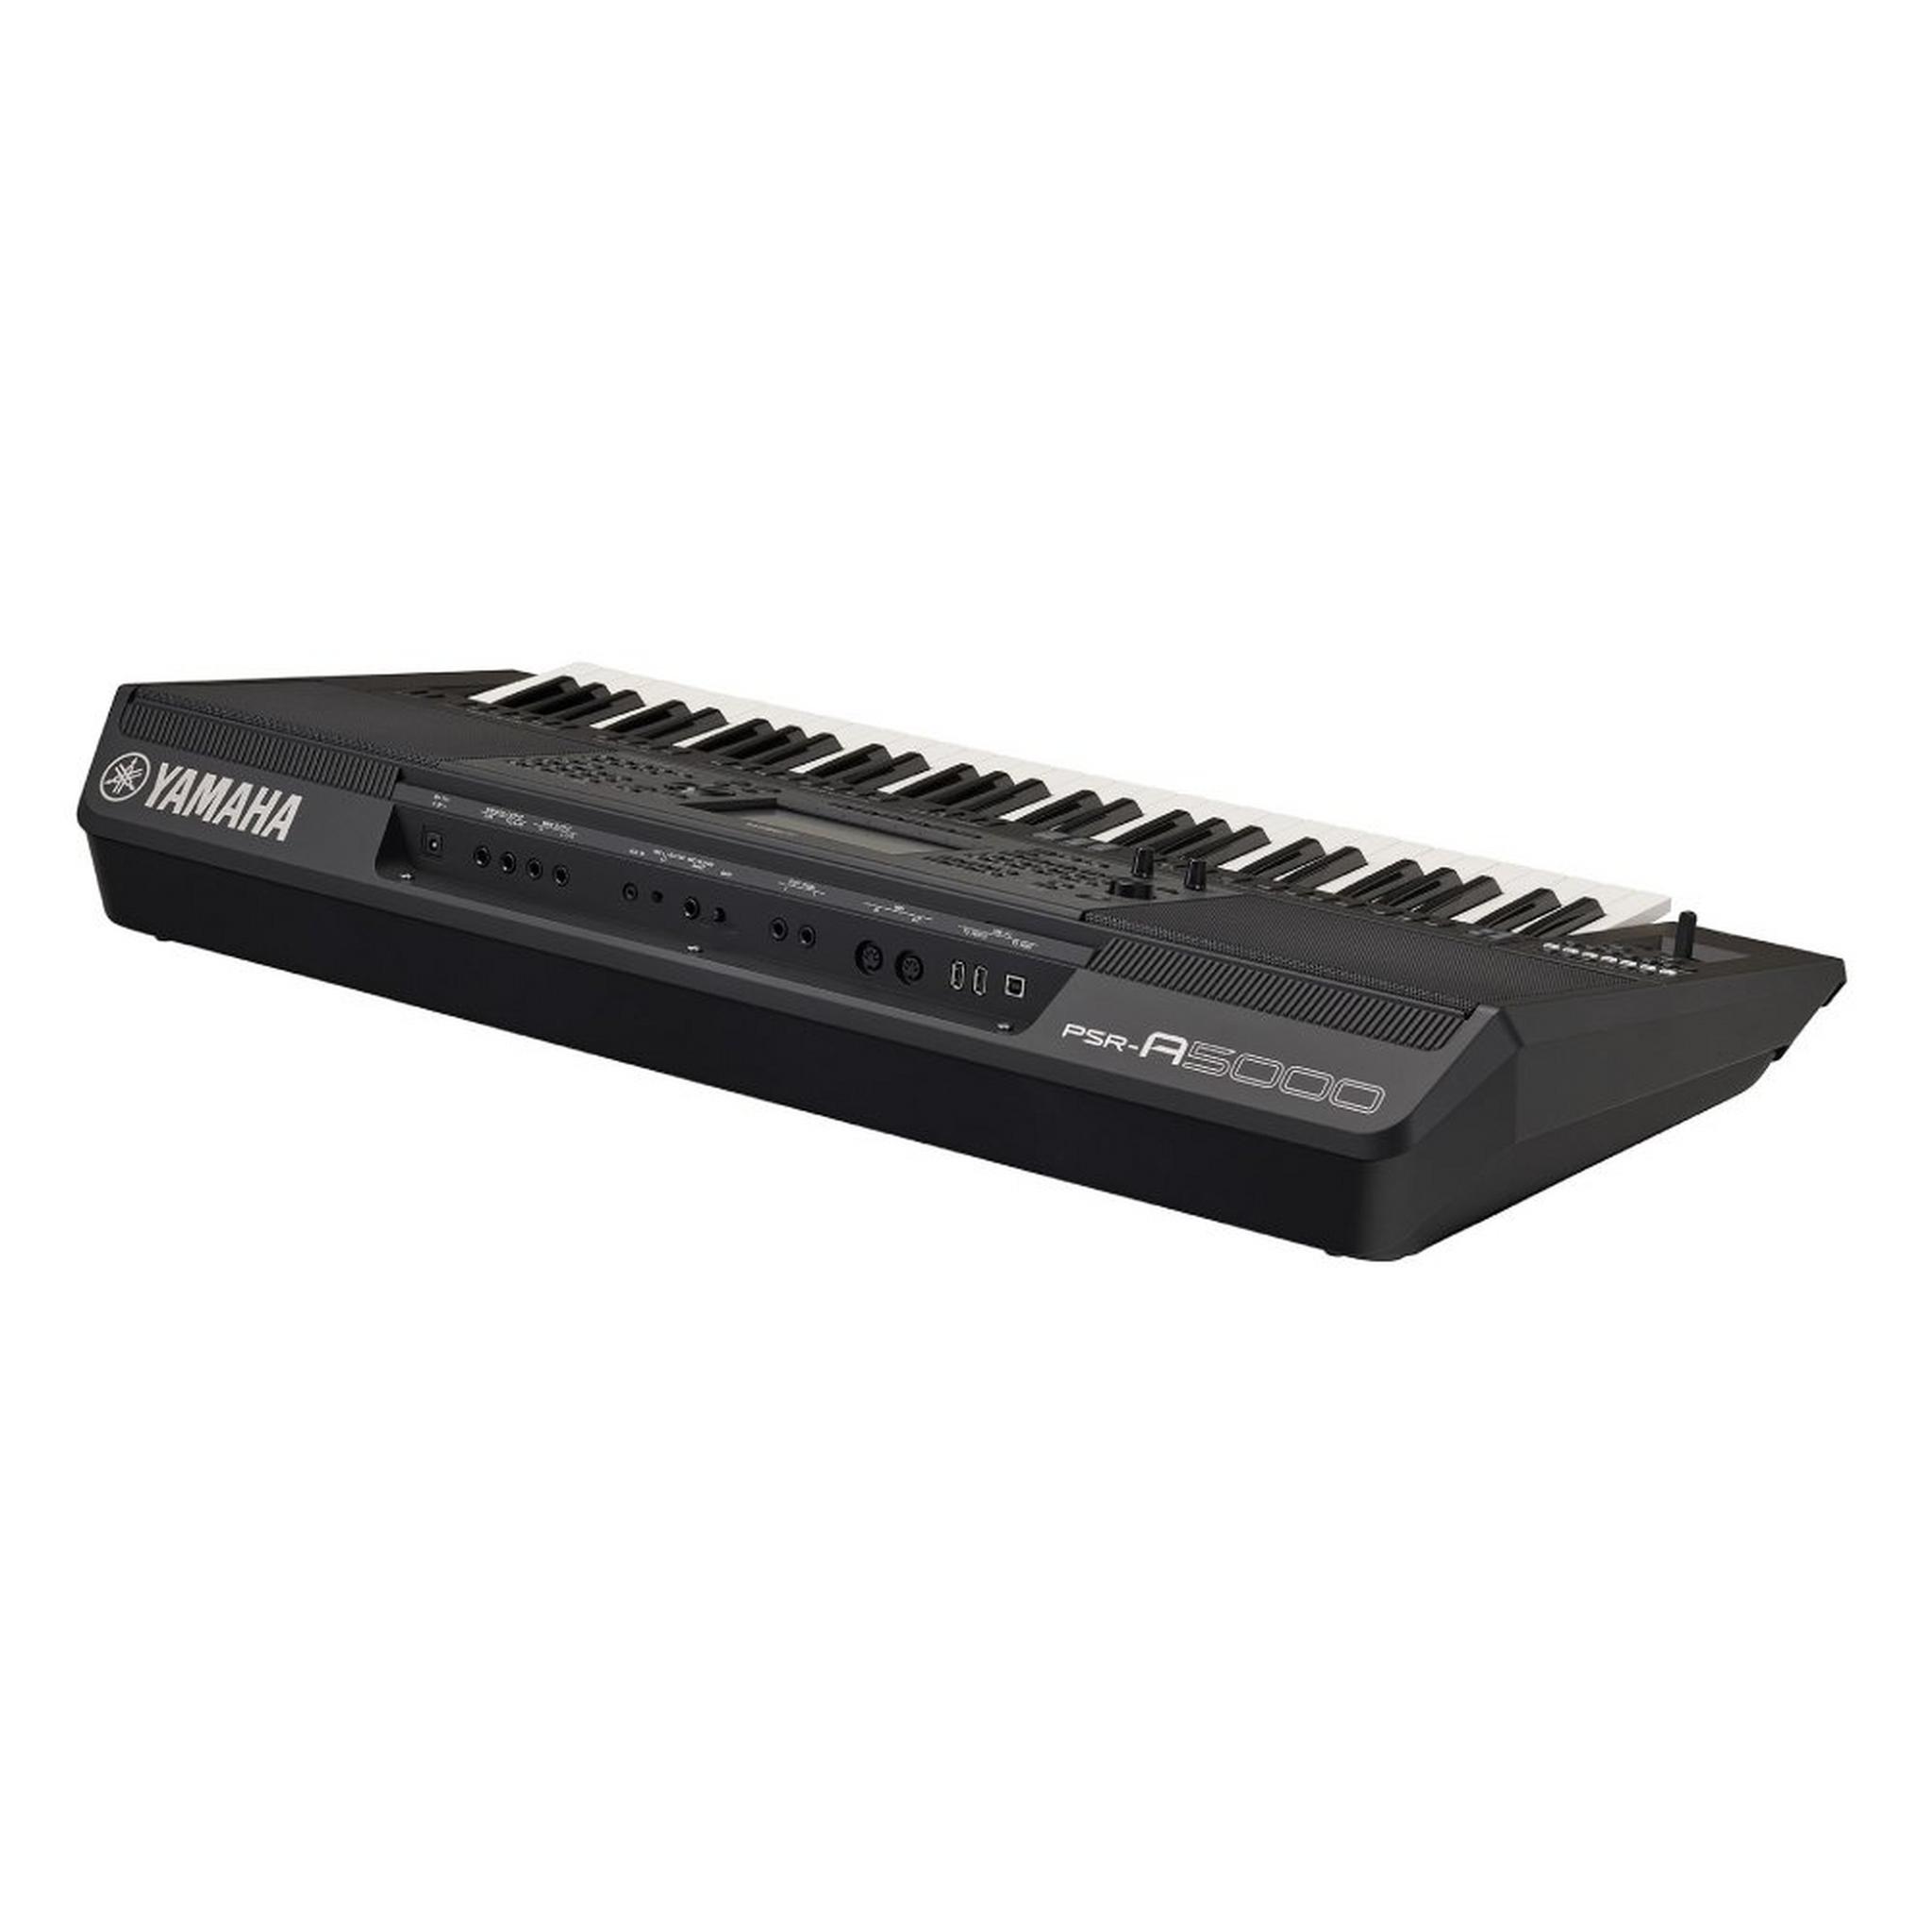 Yamaha PSR-A5000 Oriental Keyboard